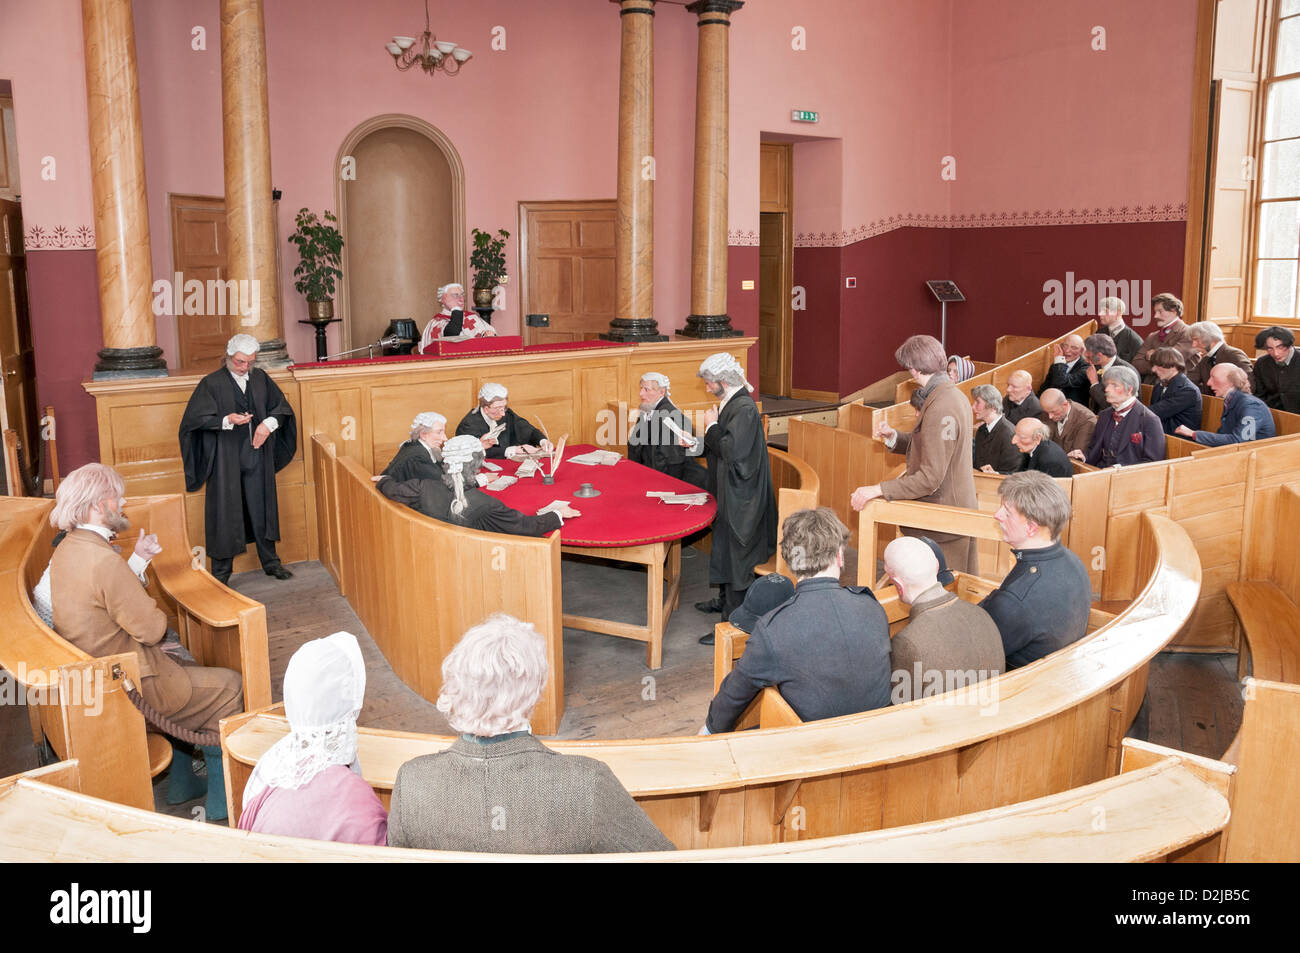 Schottland, historische Inveraray Jail & County Court, Gerichtsgebäude, 19C Gerichtssaal Ausstellung Stockfoto